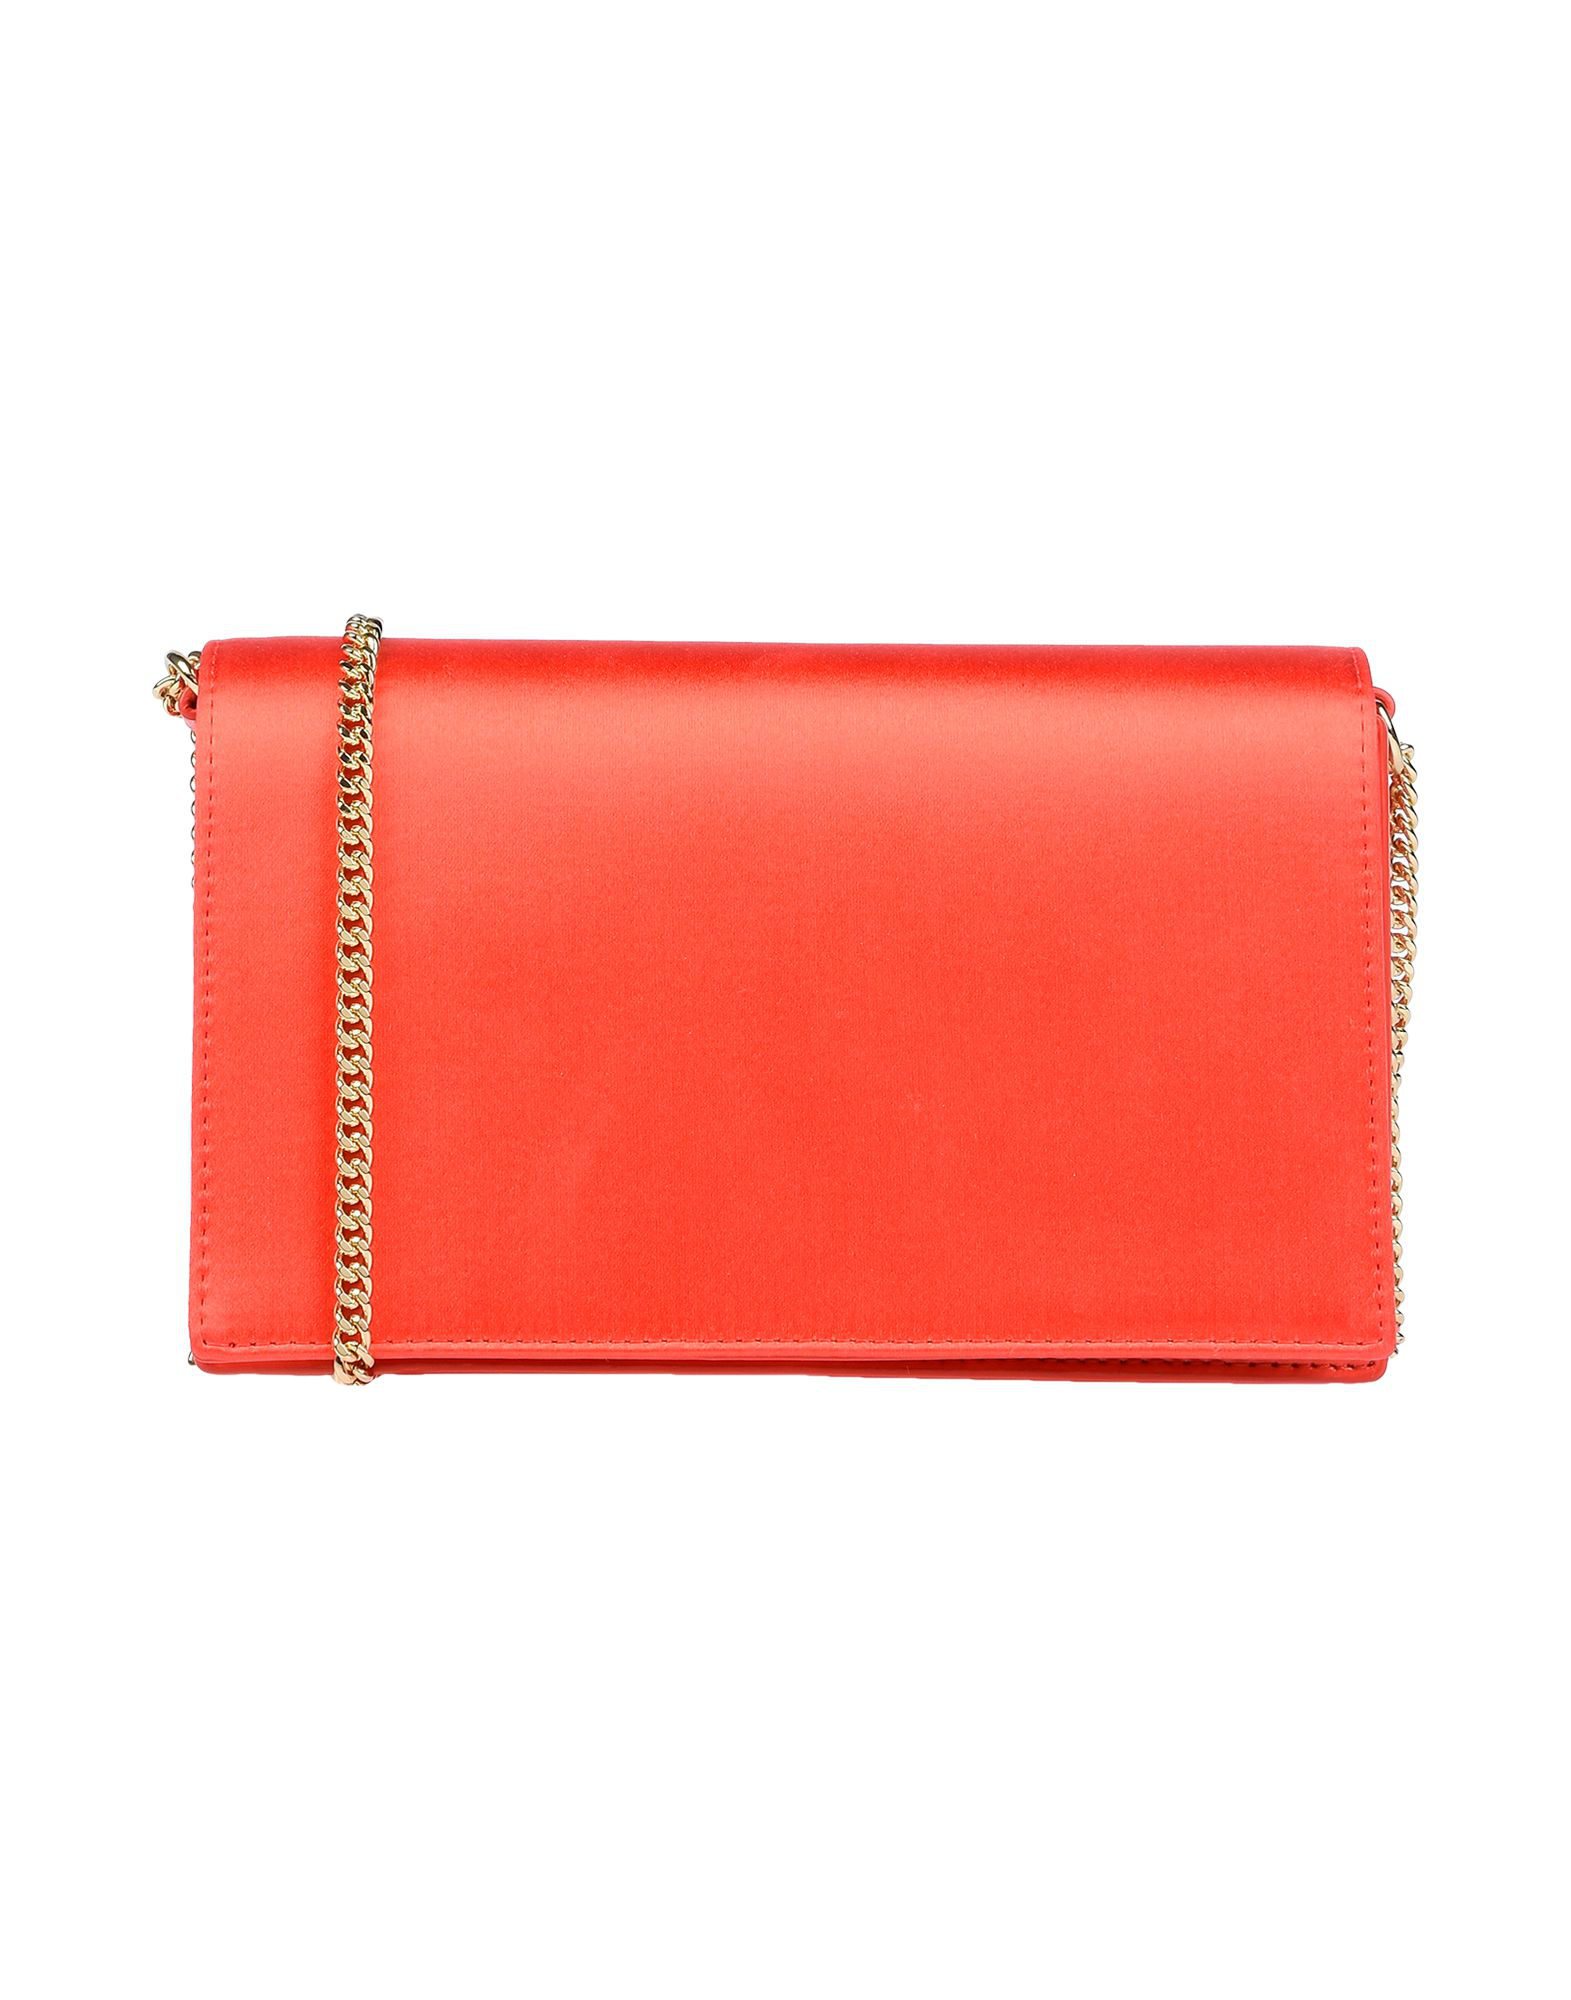 Diane Von Furstenberg Handbag In Red | ModeSens